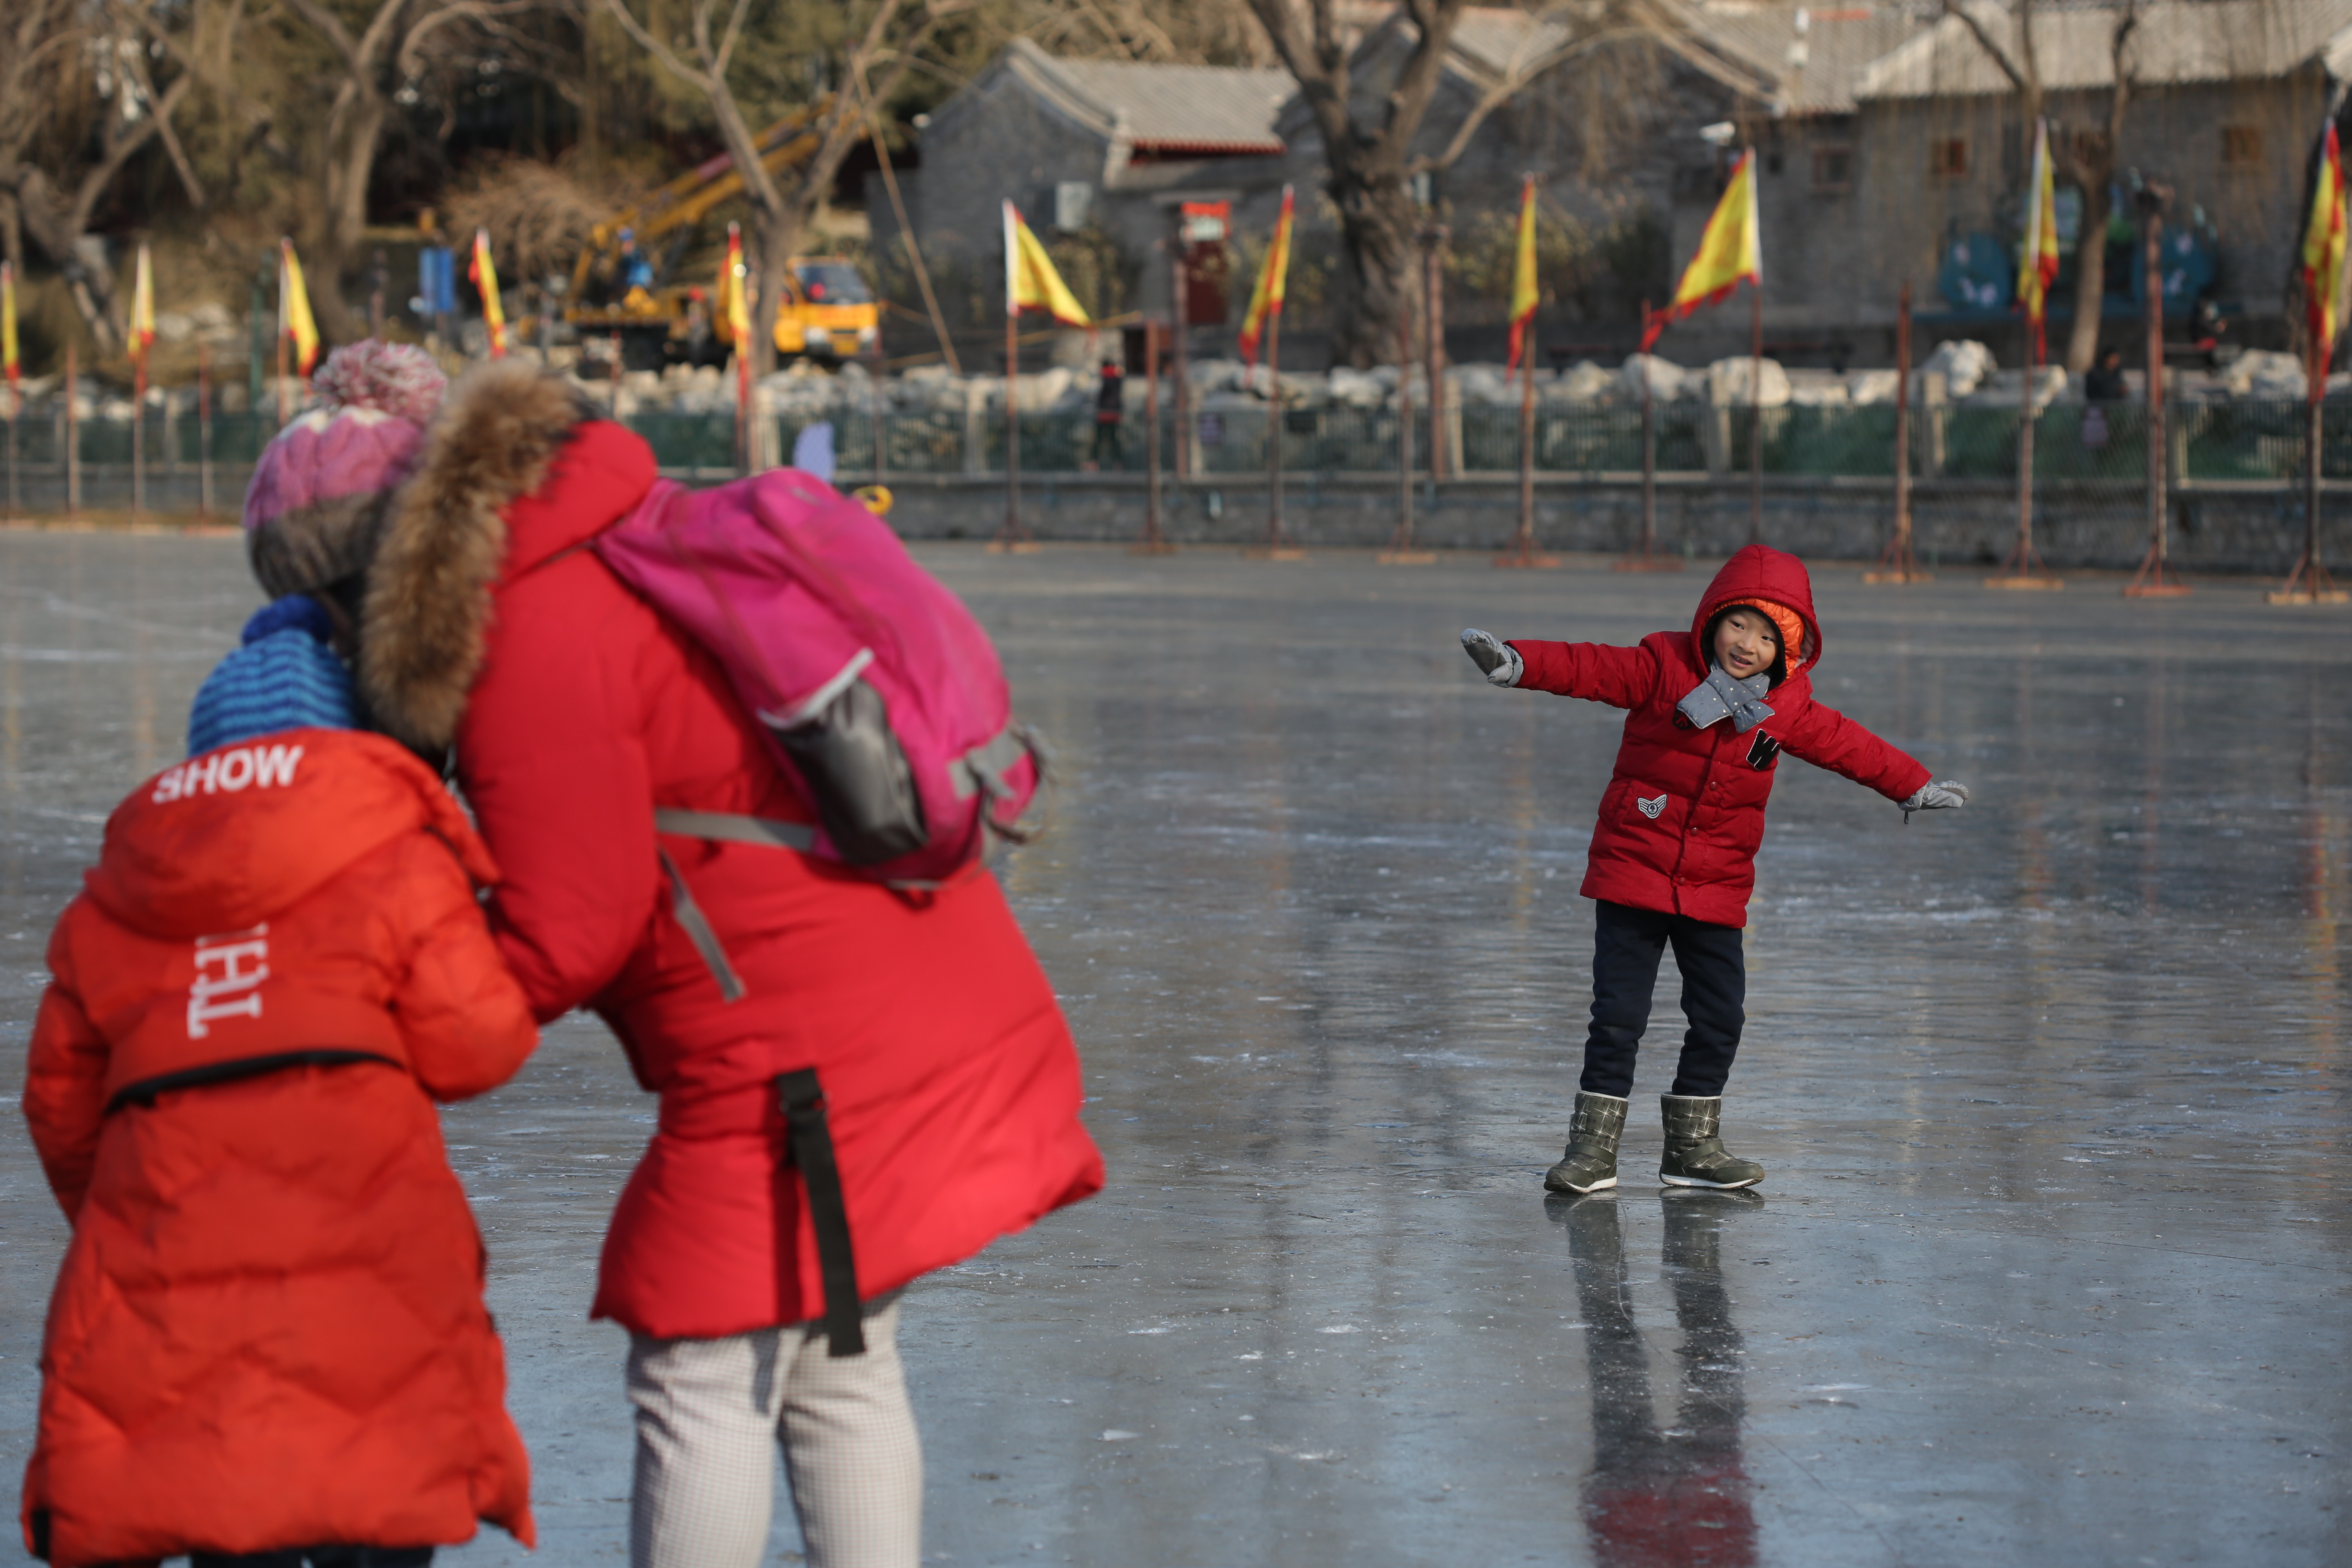 北京后海滑冰图片